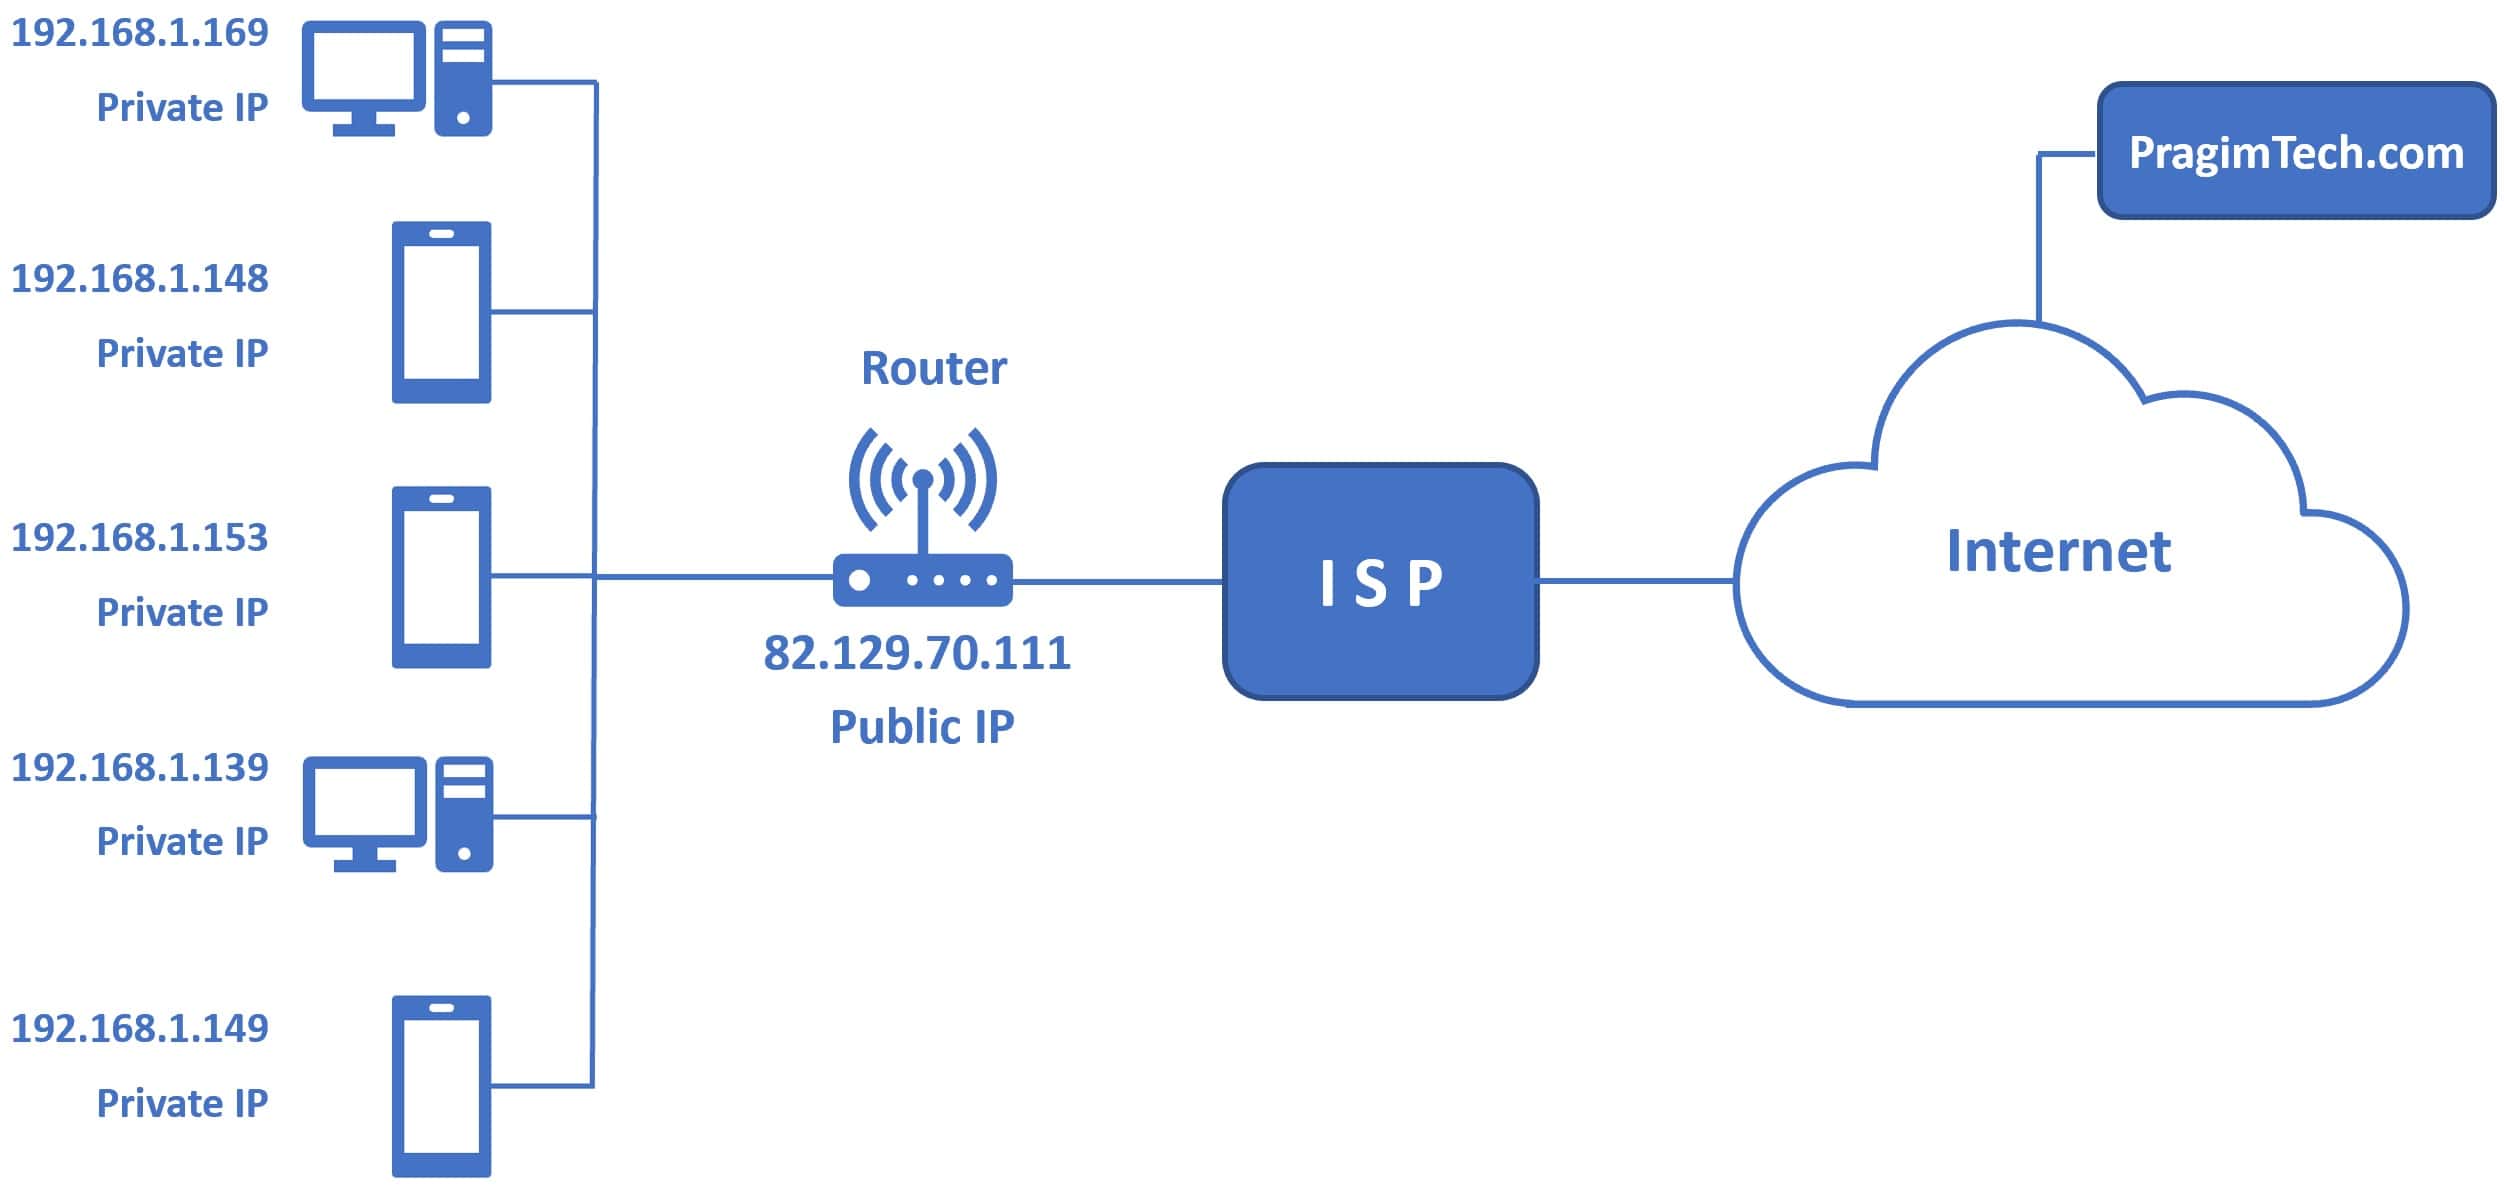 Public IP